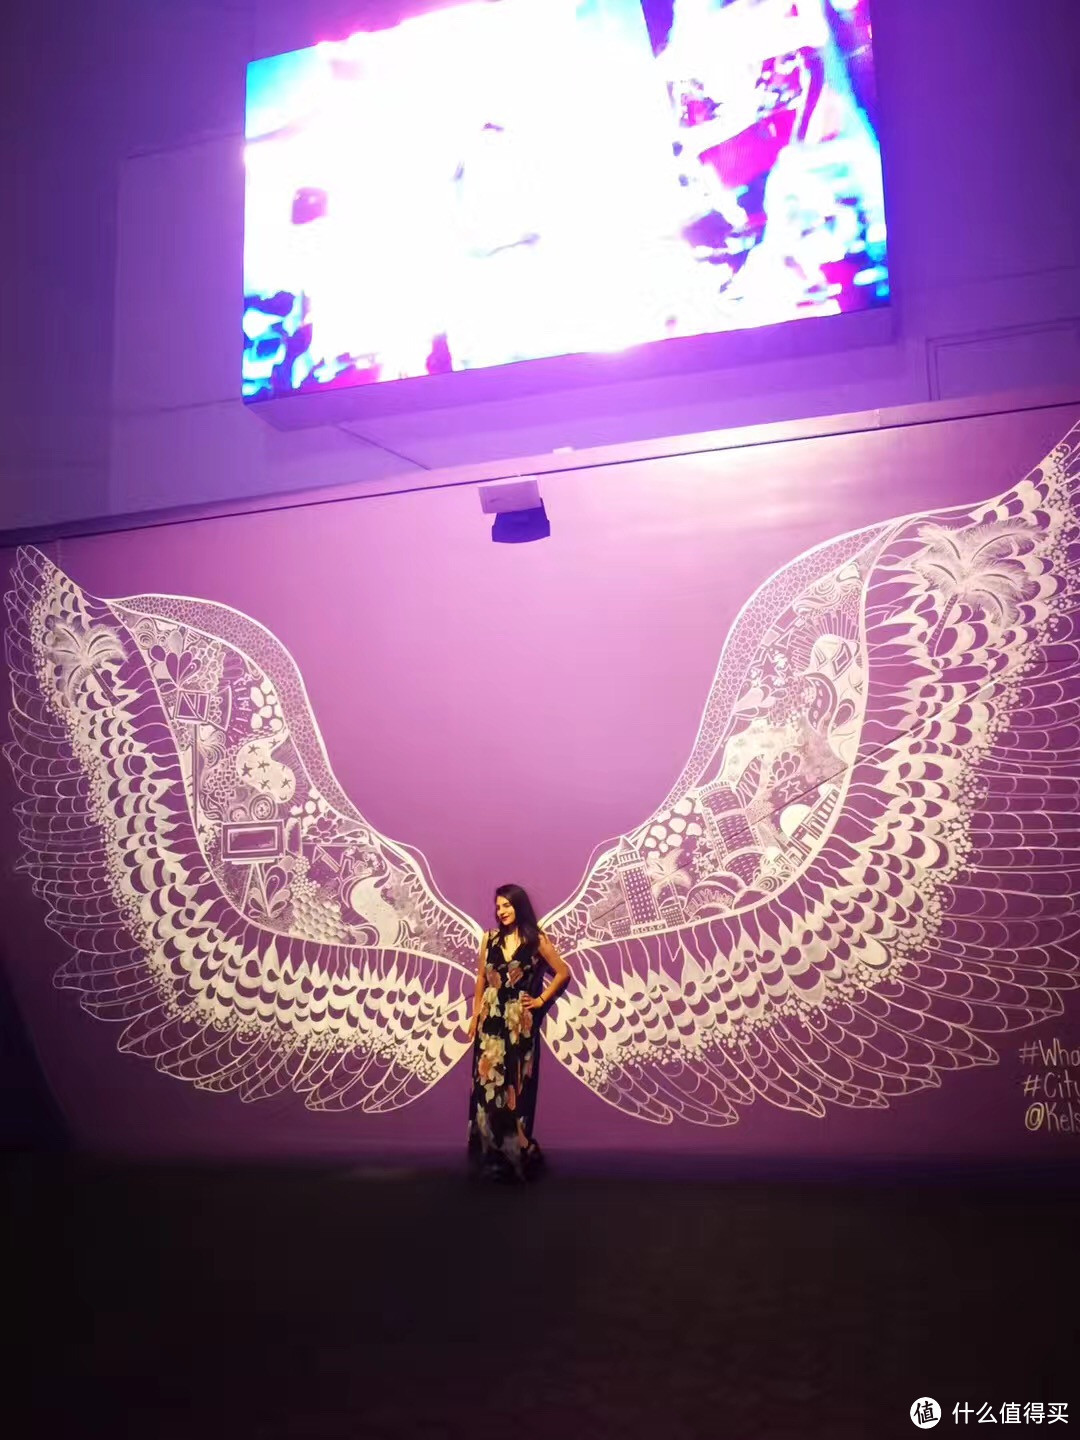 作为“天使之城”，洛杉矶的城市中散落着许多翅膀